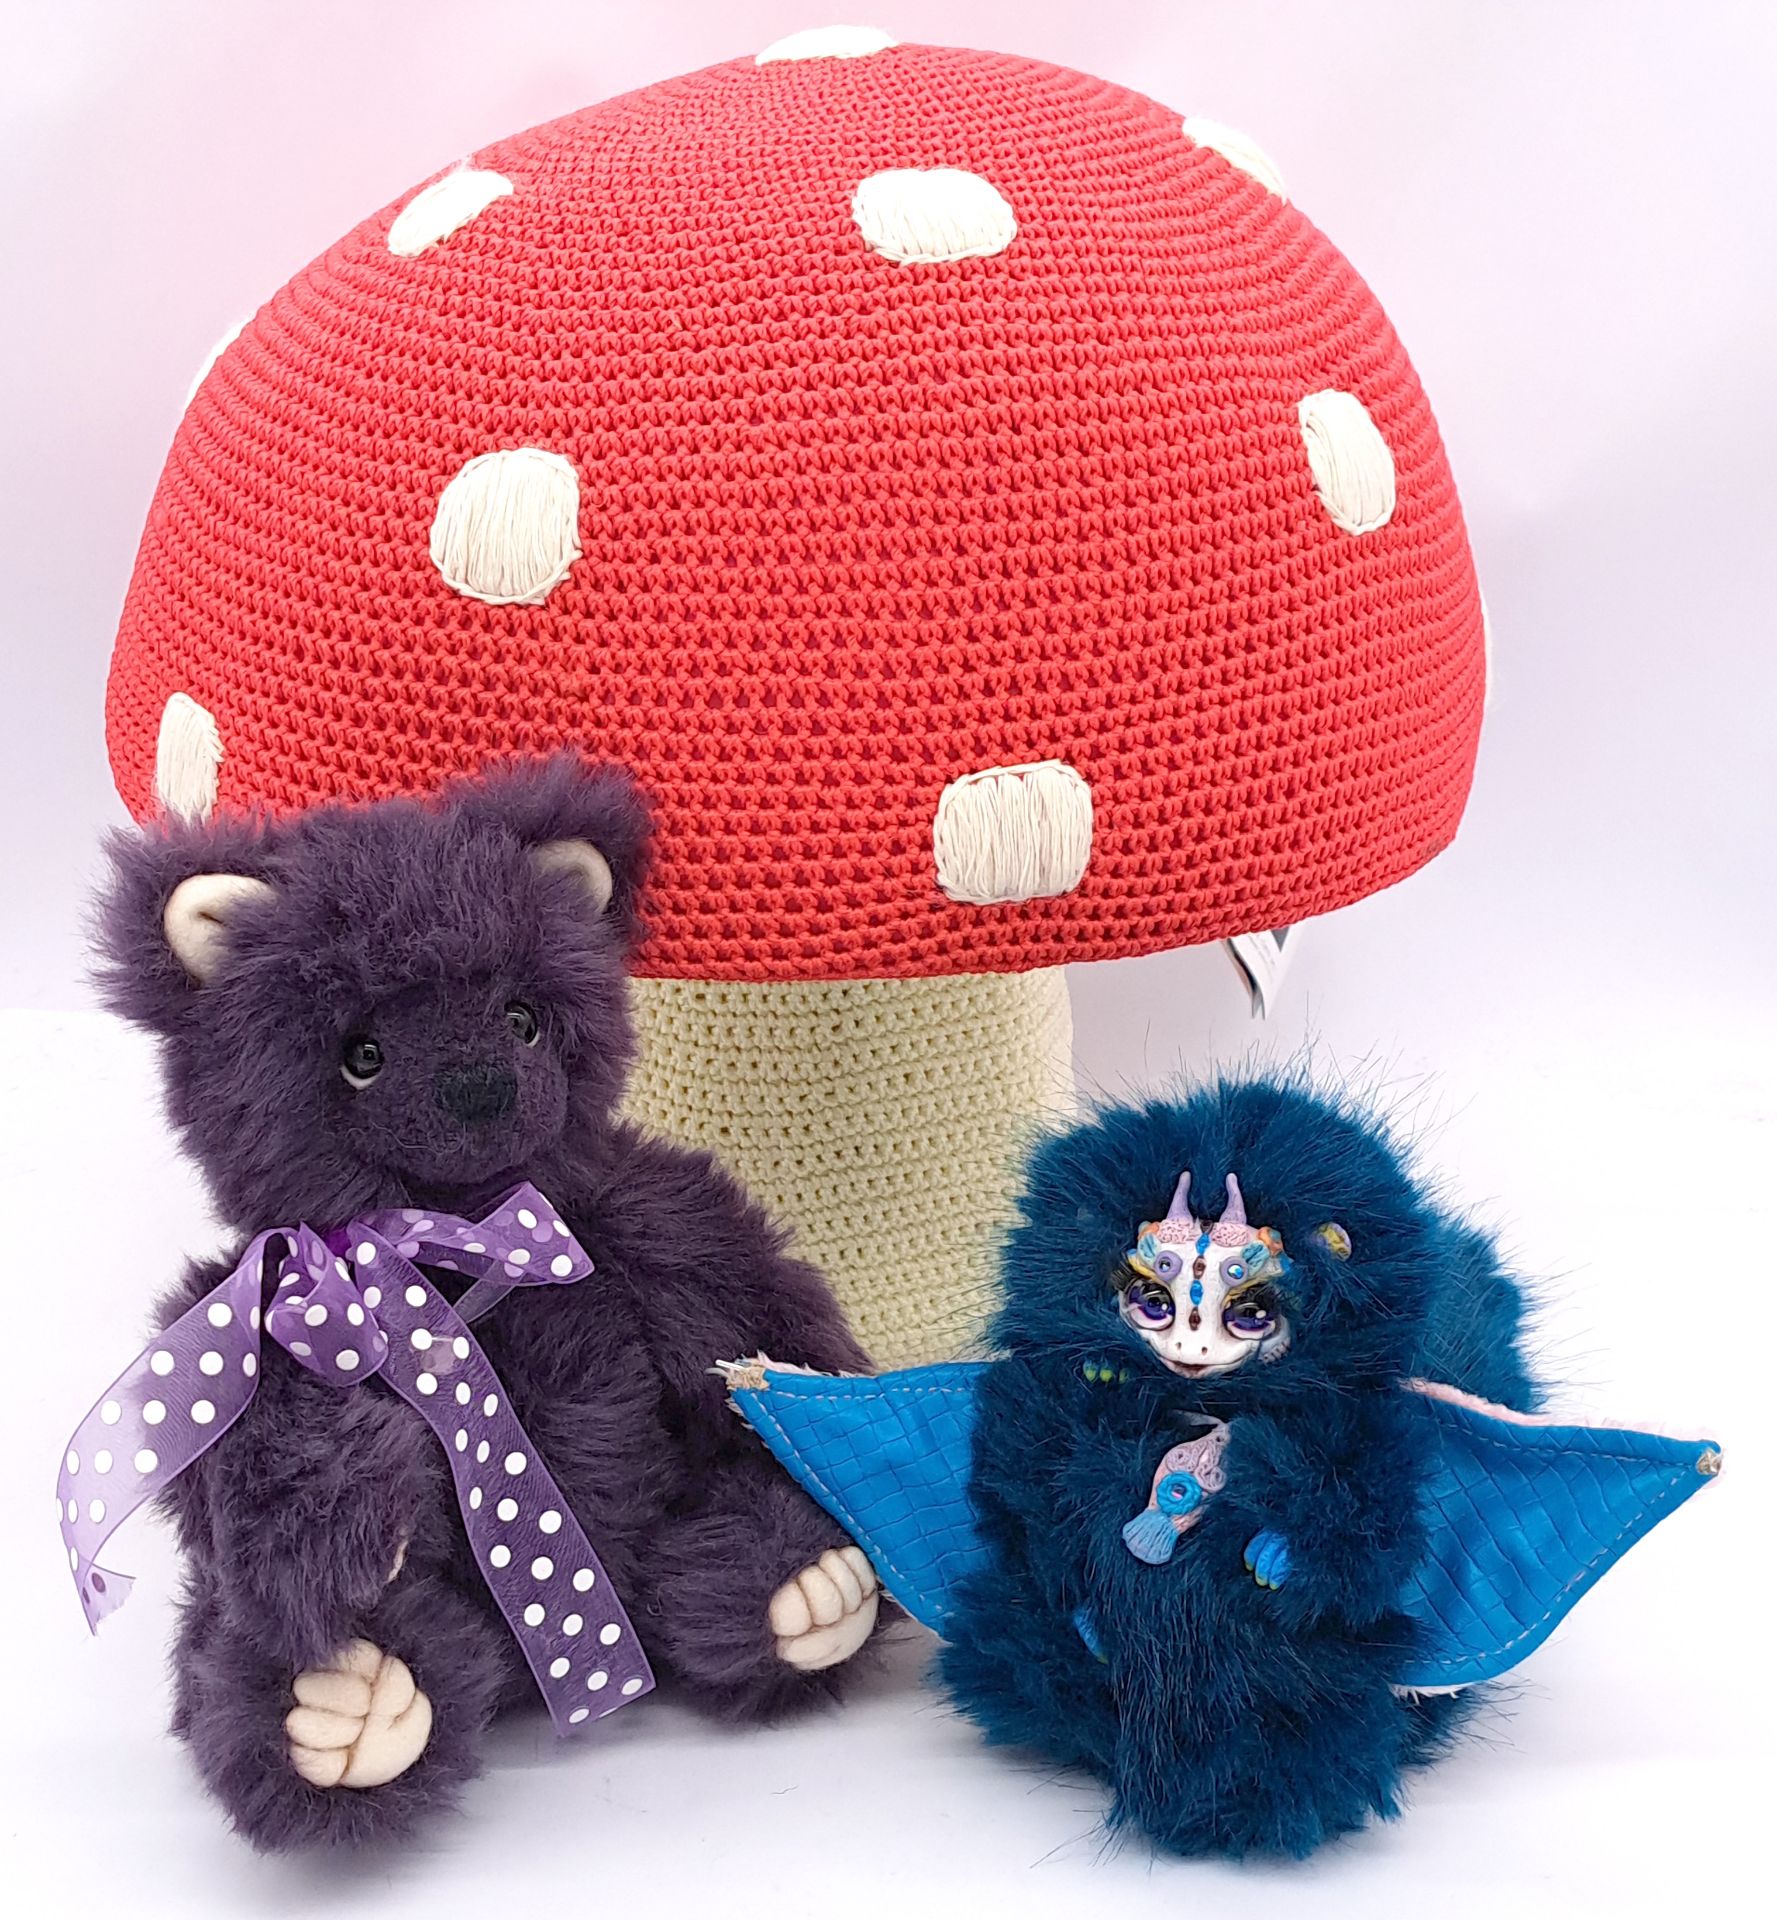 Artist teddy bear pair plus crochet toadstool pouffe